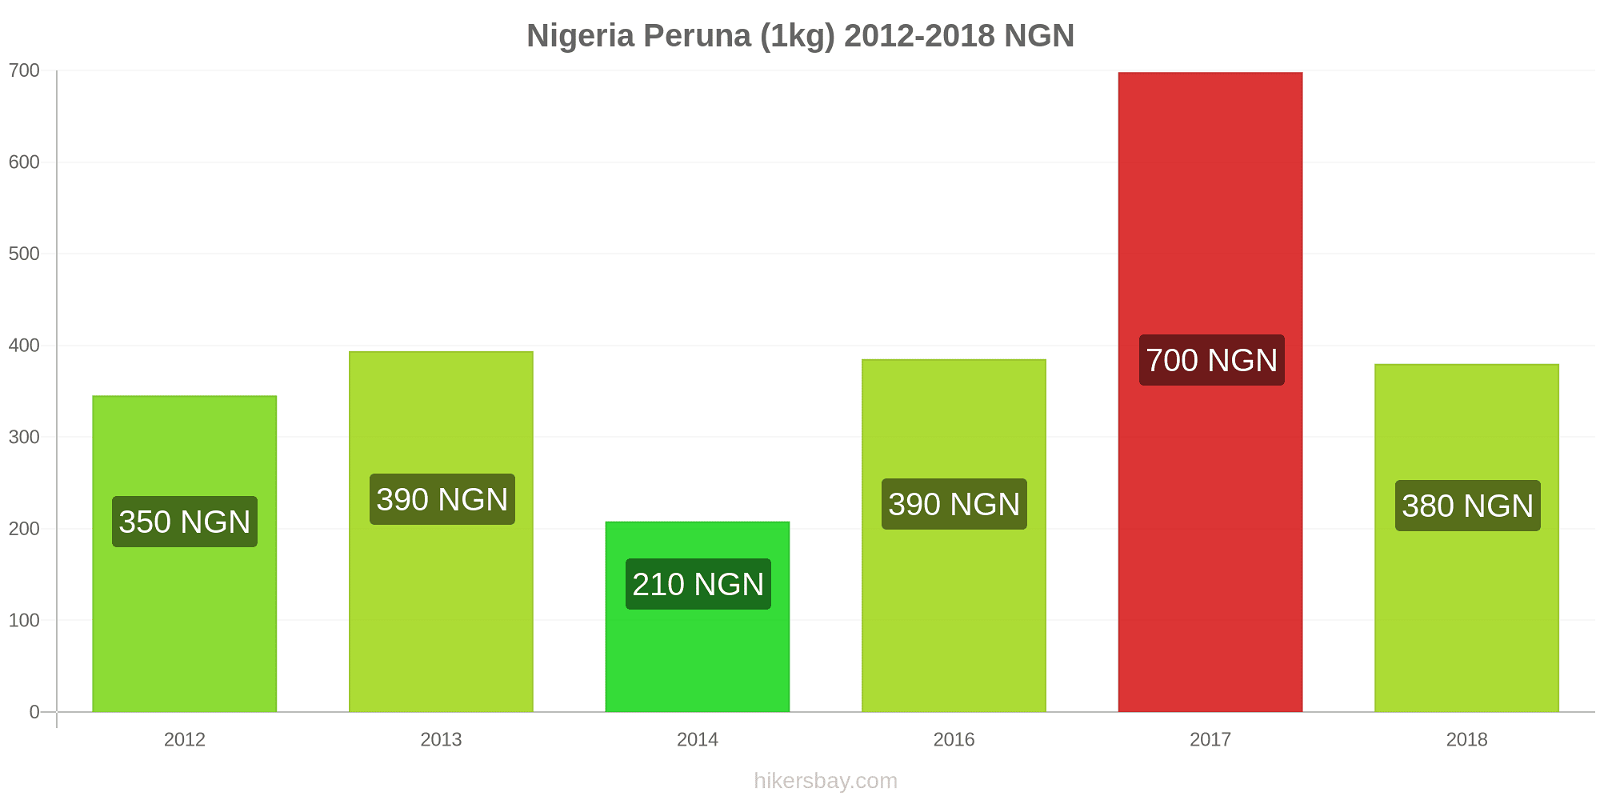 Nigeria hintojen muutokset Peruna (1kg) hikersbay.com